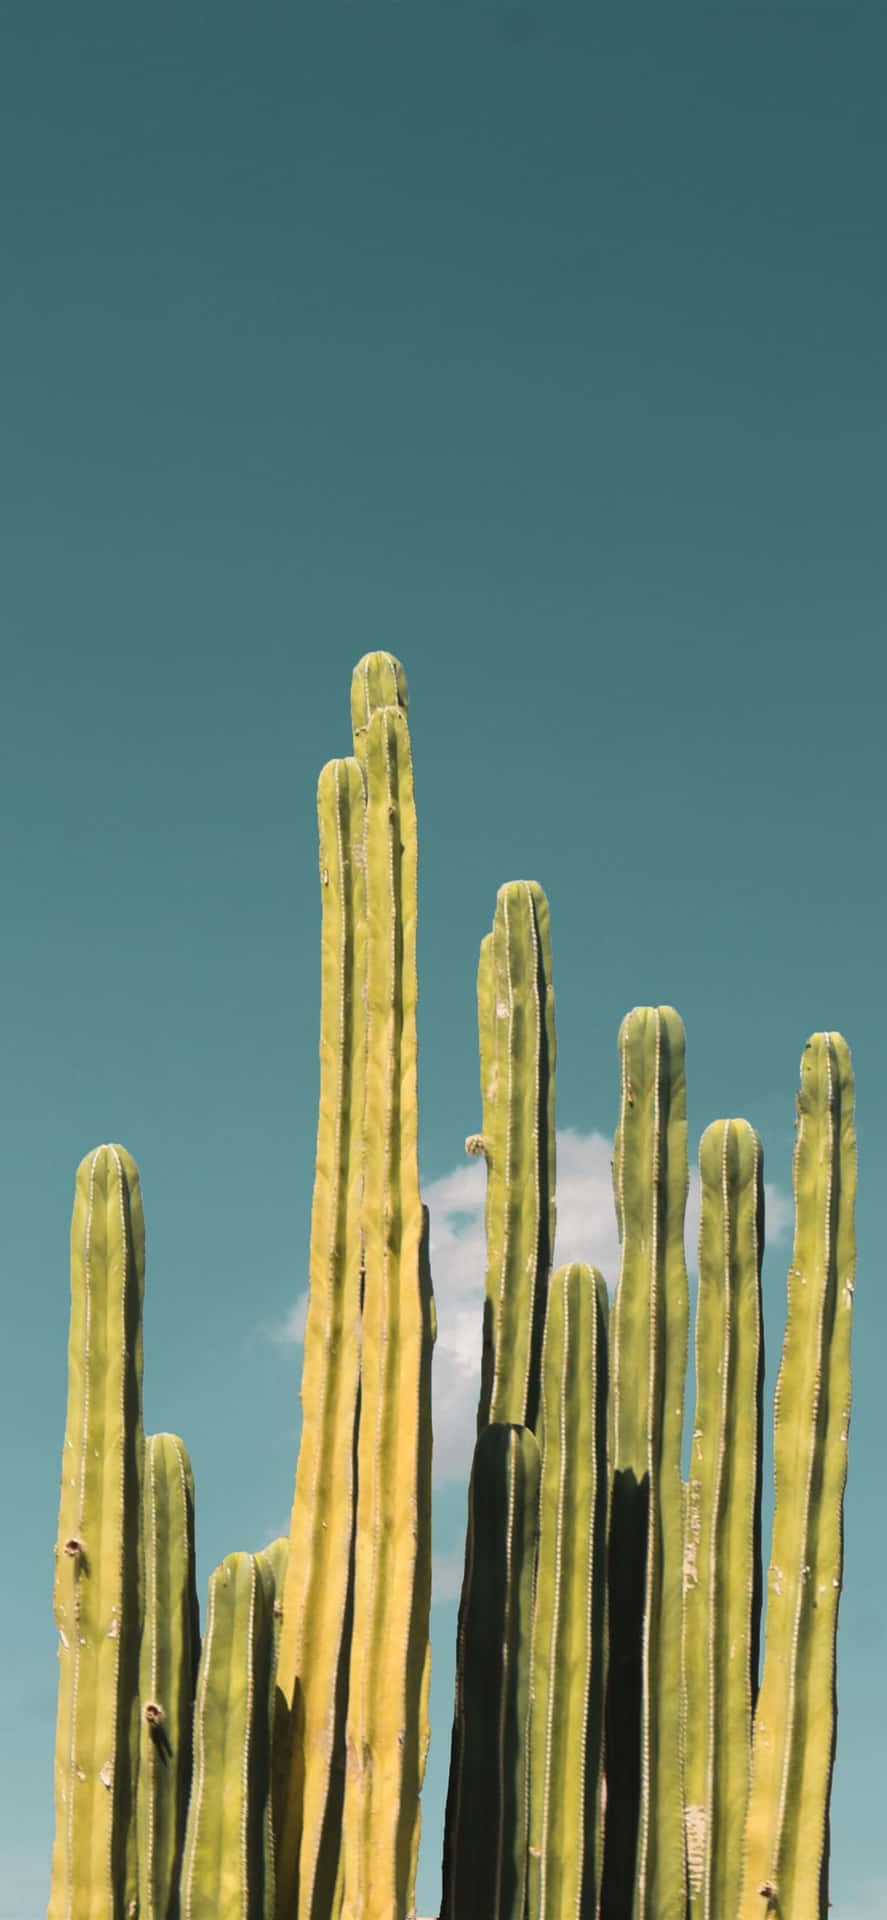 Kaktusiphone Blå Himmel. Wallpaper